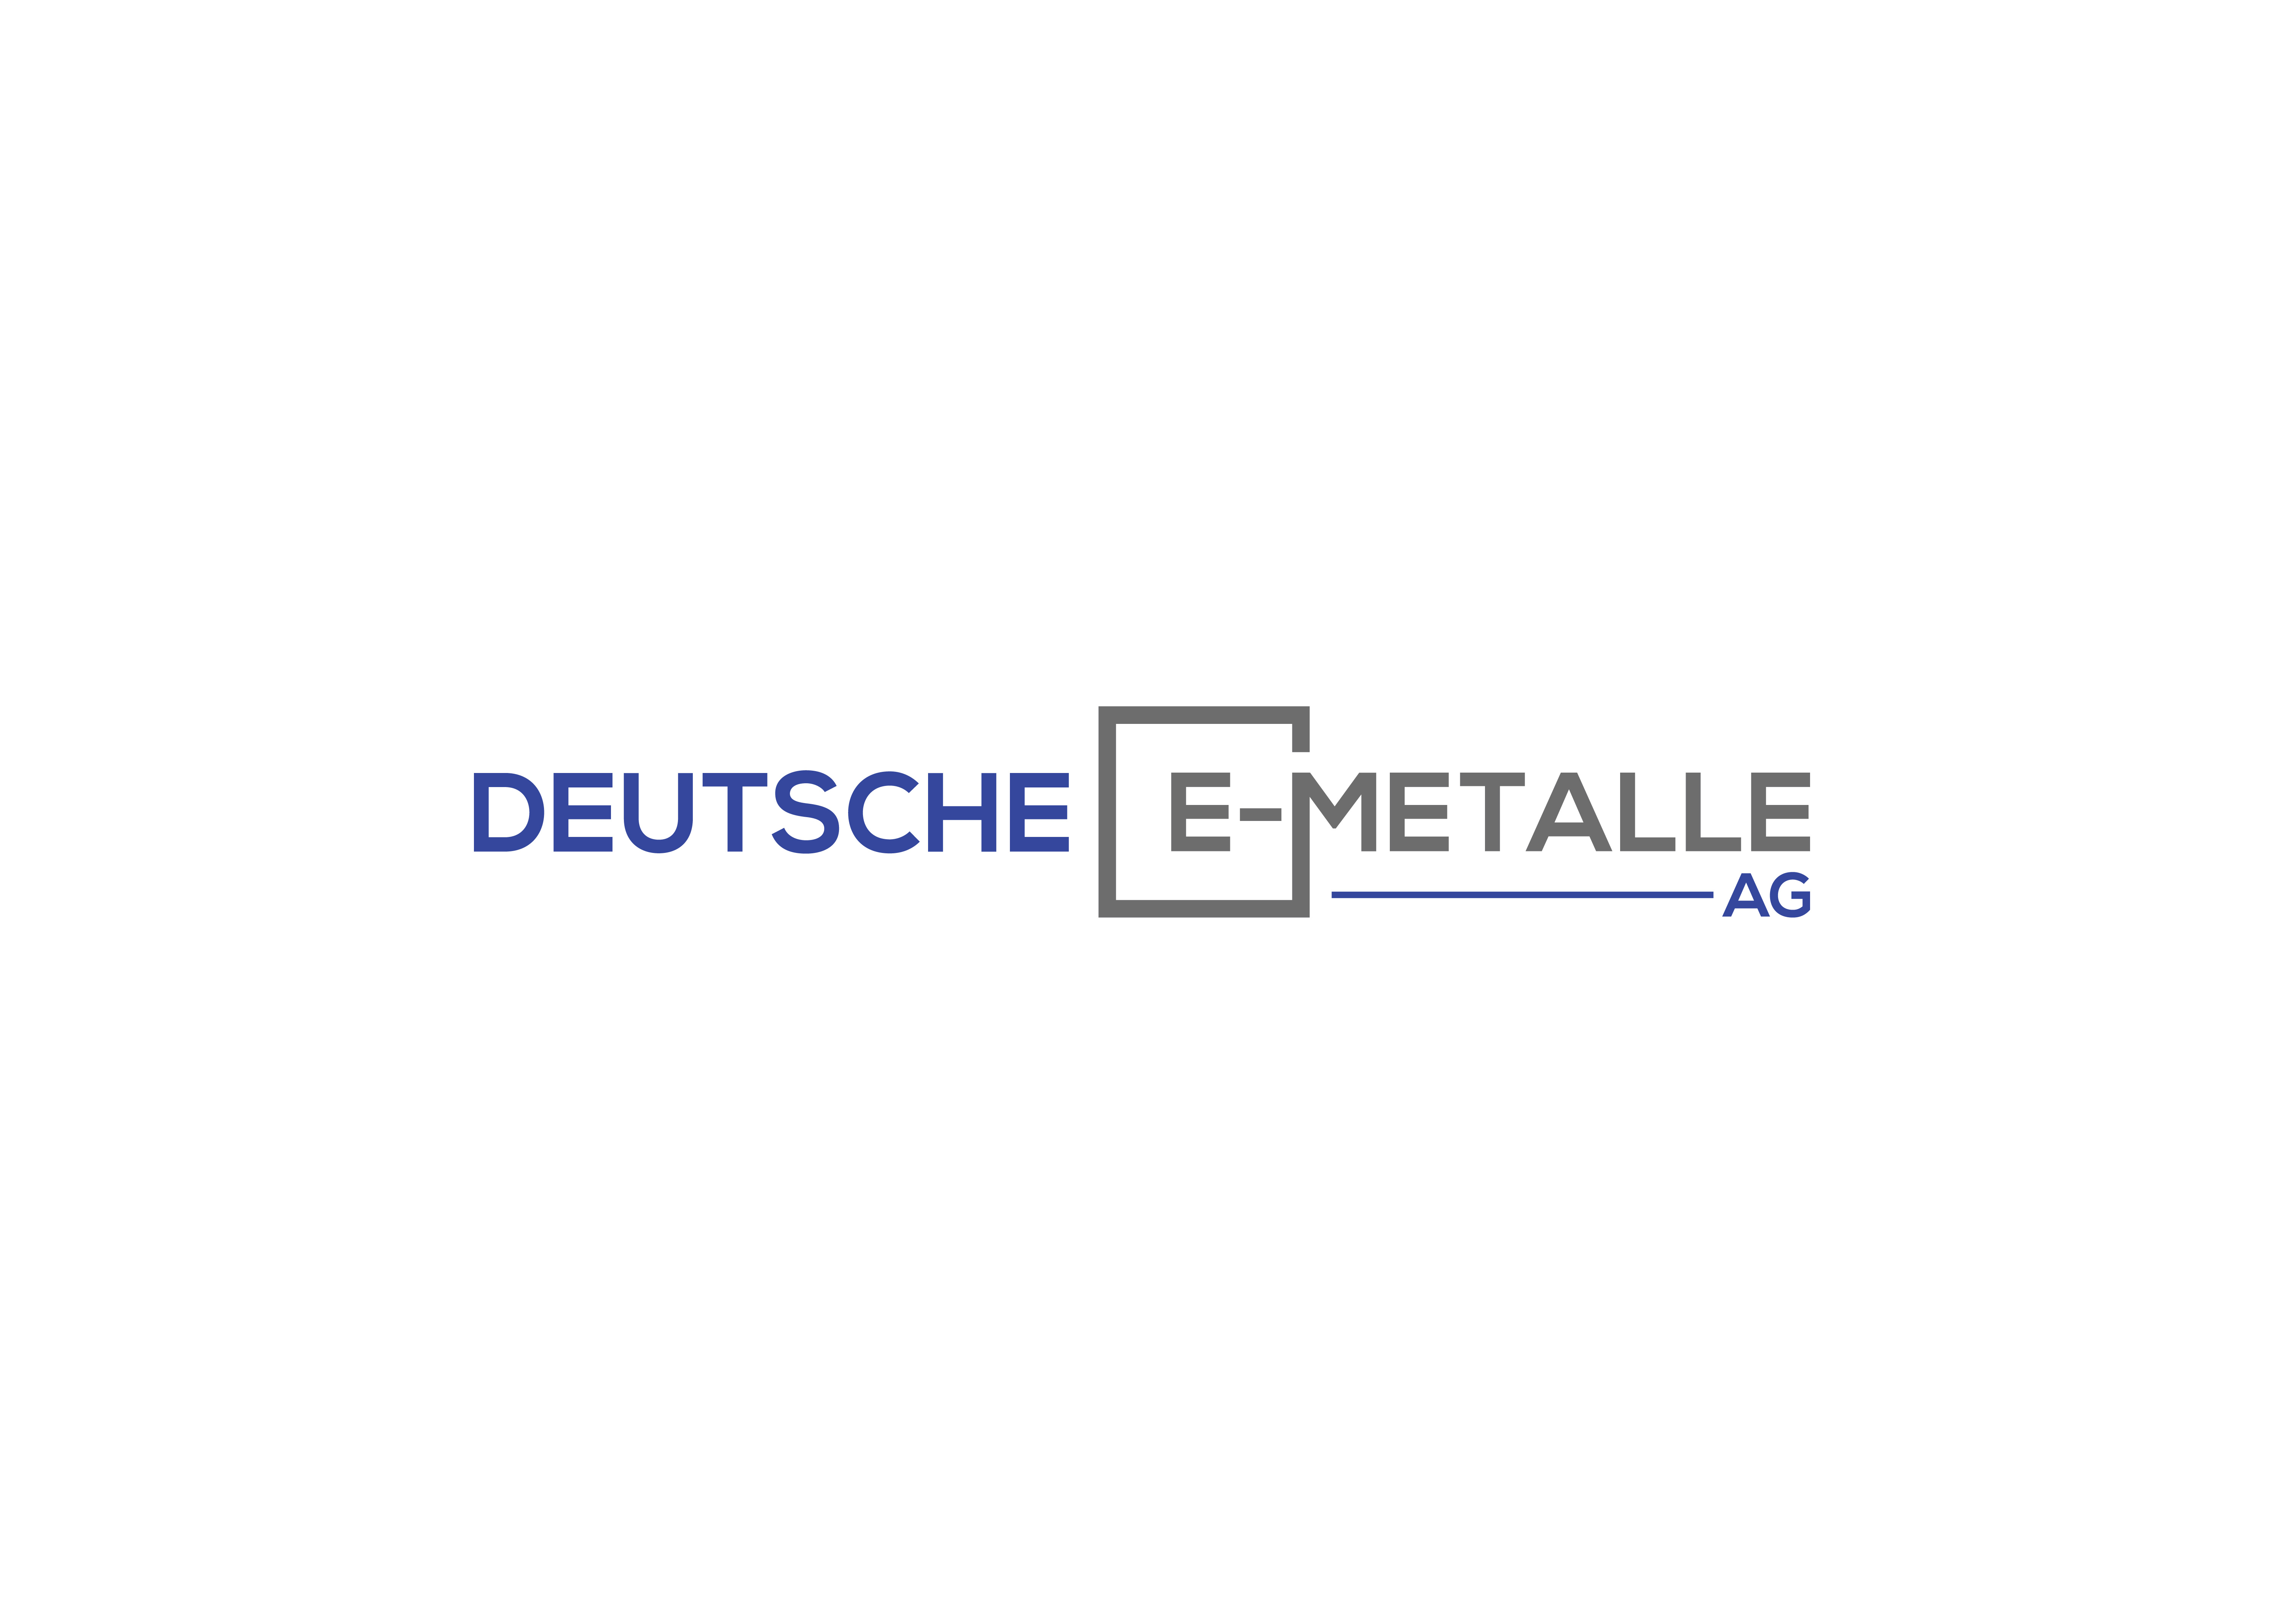 DEM - Deutsche E Metalle AG